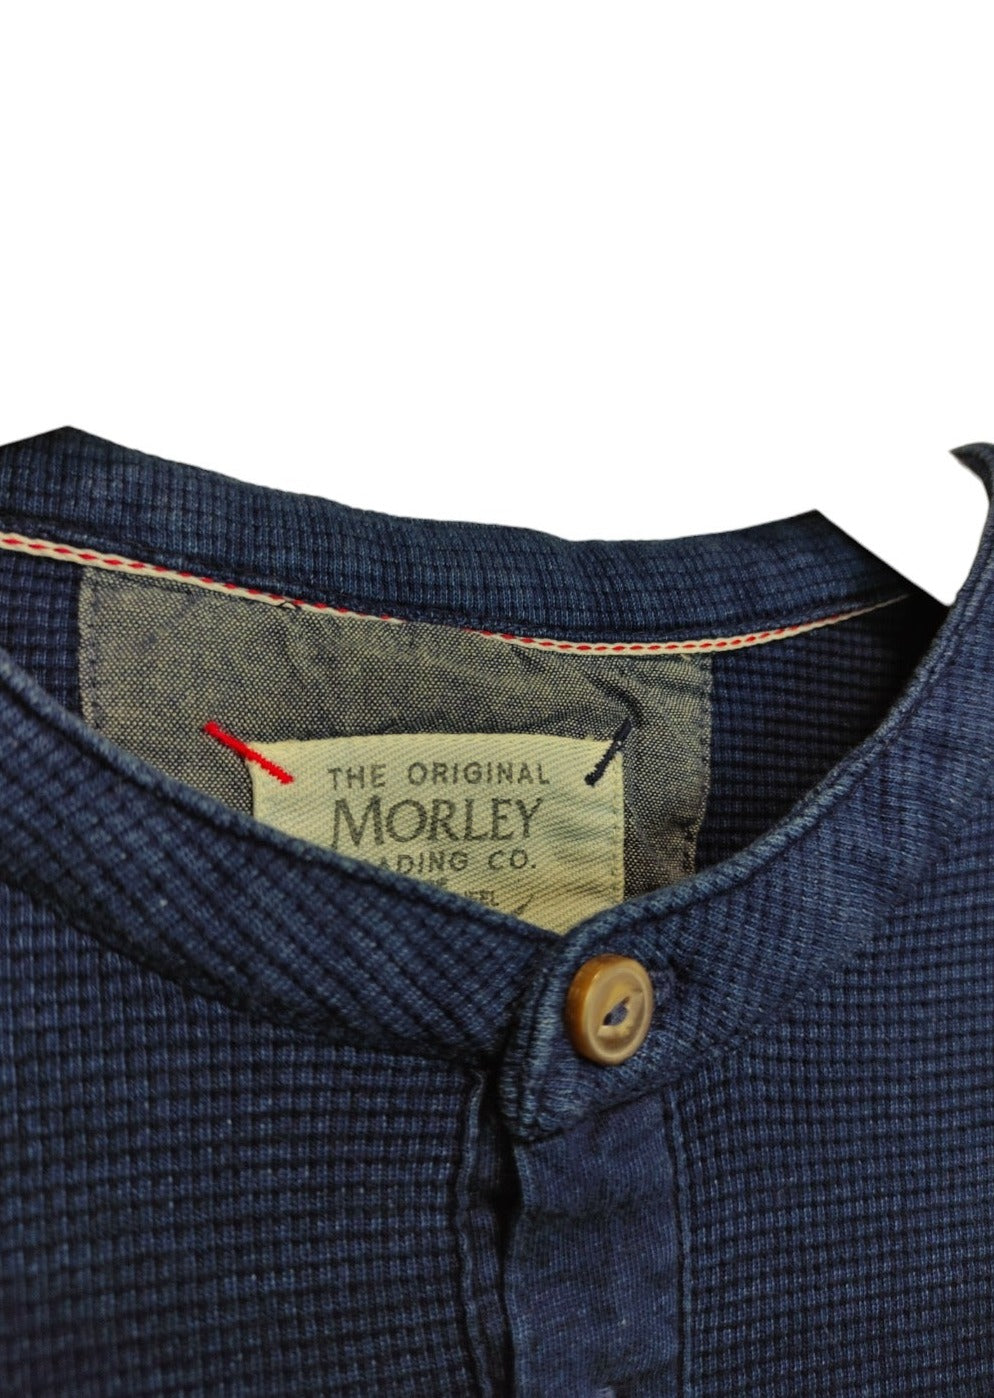 Stock, Πλεκτή Ανδρική Μπλούζα/Πουλόβερ MORLEY TRADING & CO σε Σκούρο Μπλε χρώμα (Medium)